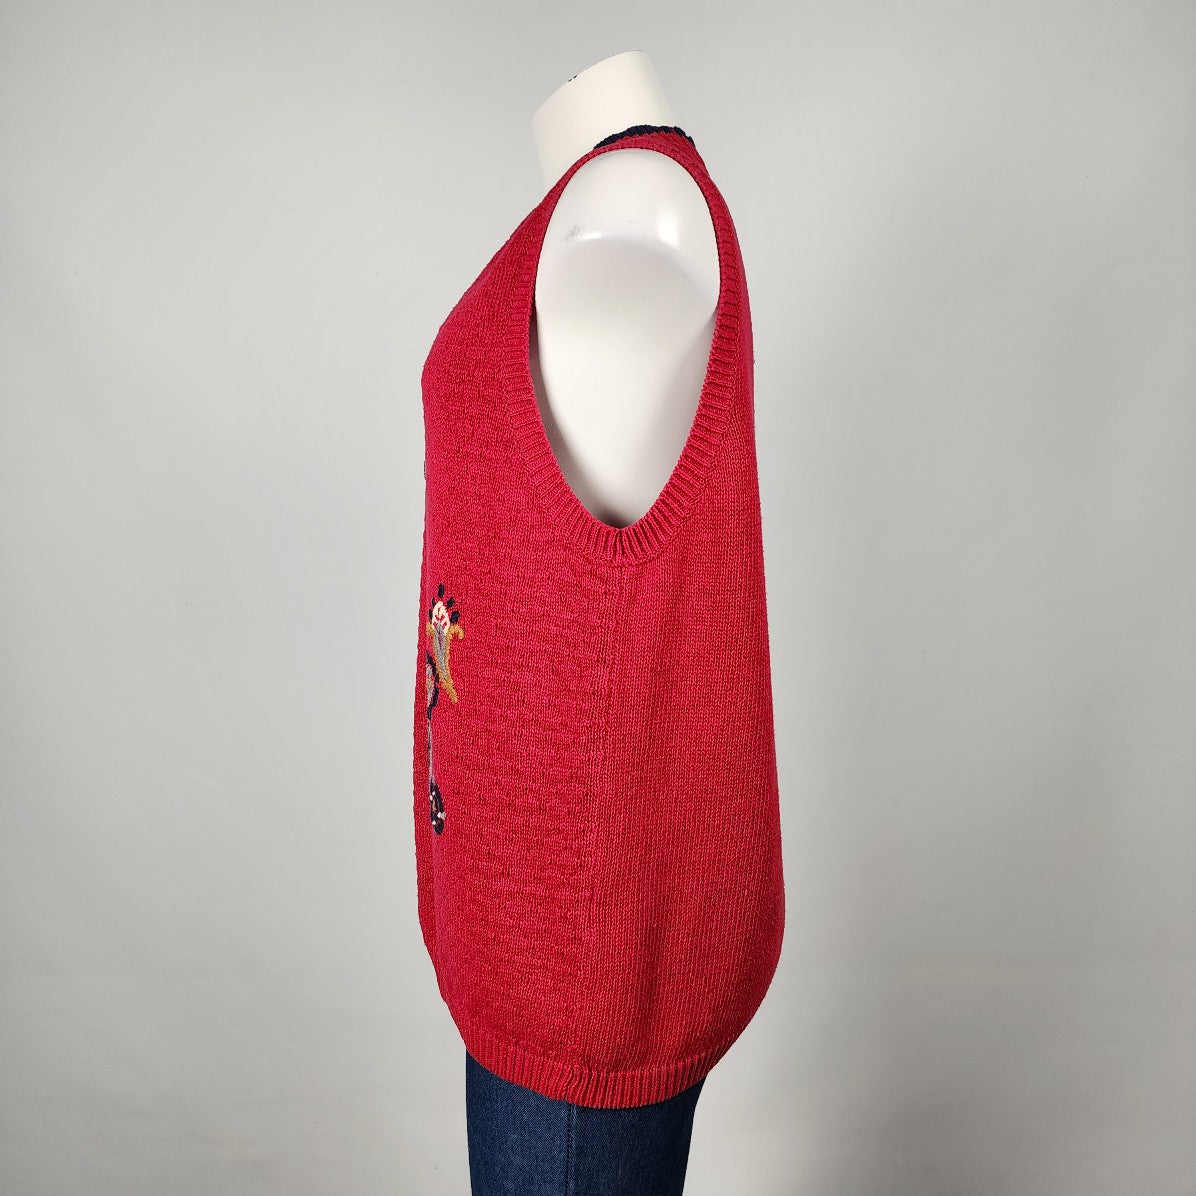 Vintage The Villager Red Cotton Blend Knit Embroidered Floral Vest Size M